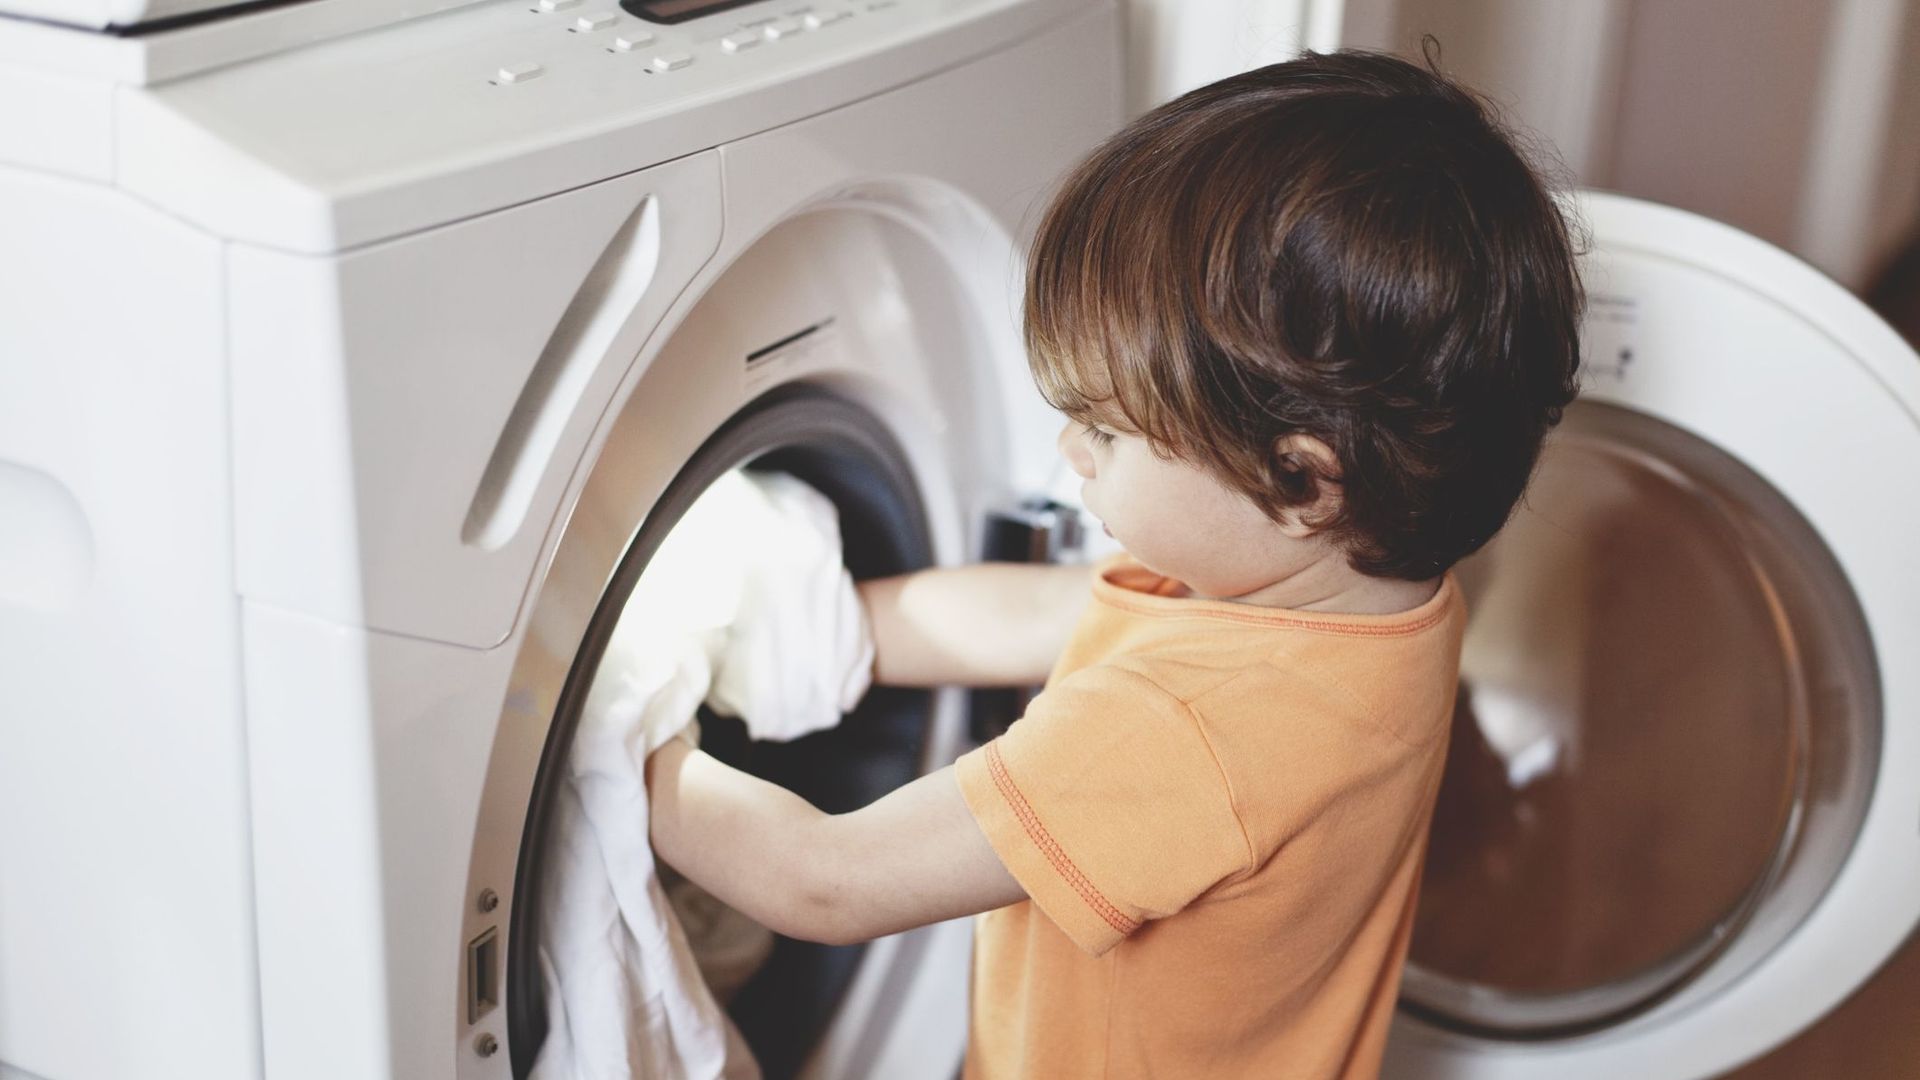 En France, les machines à laver devront être équipées de filtres à microplastiques d'ici 2025.